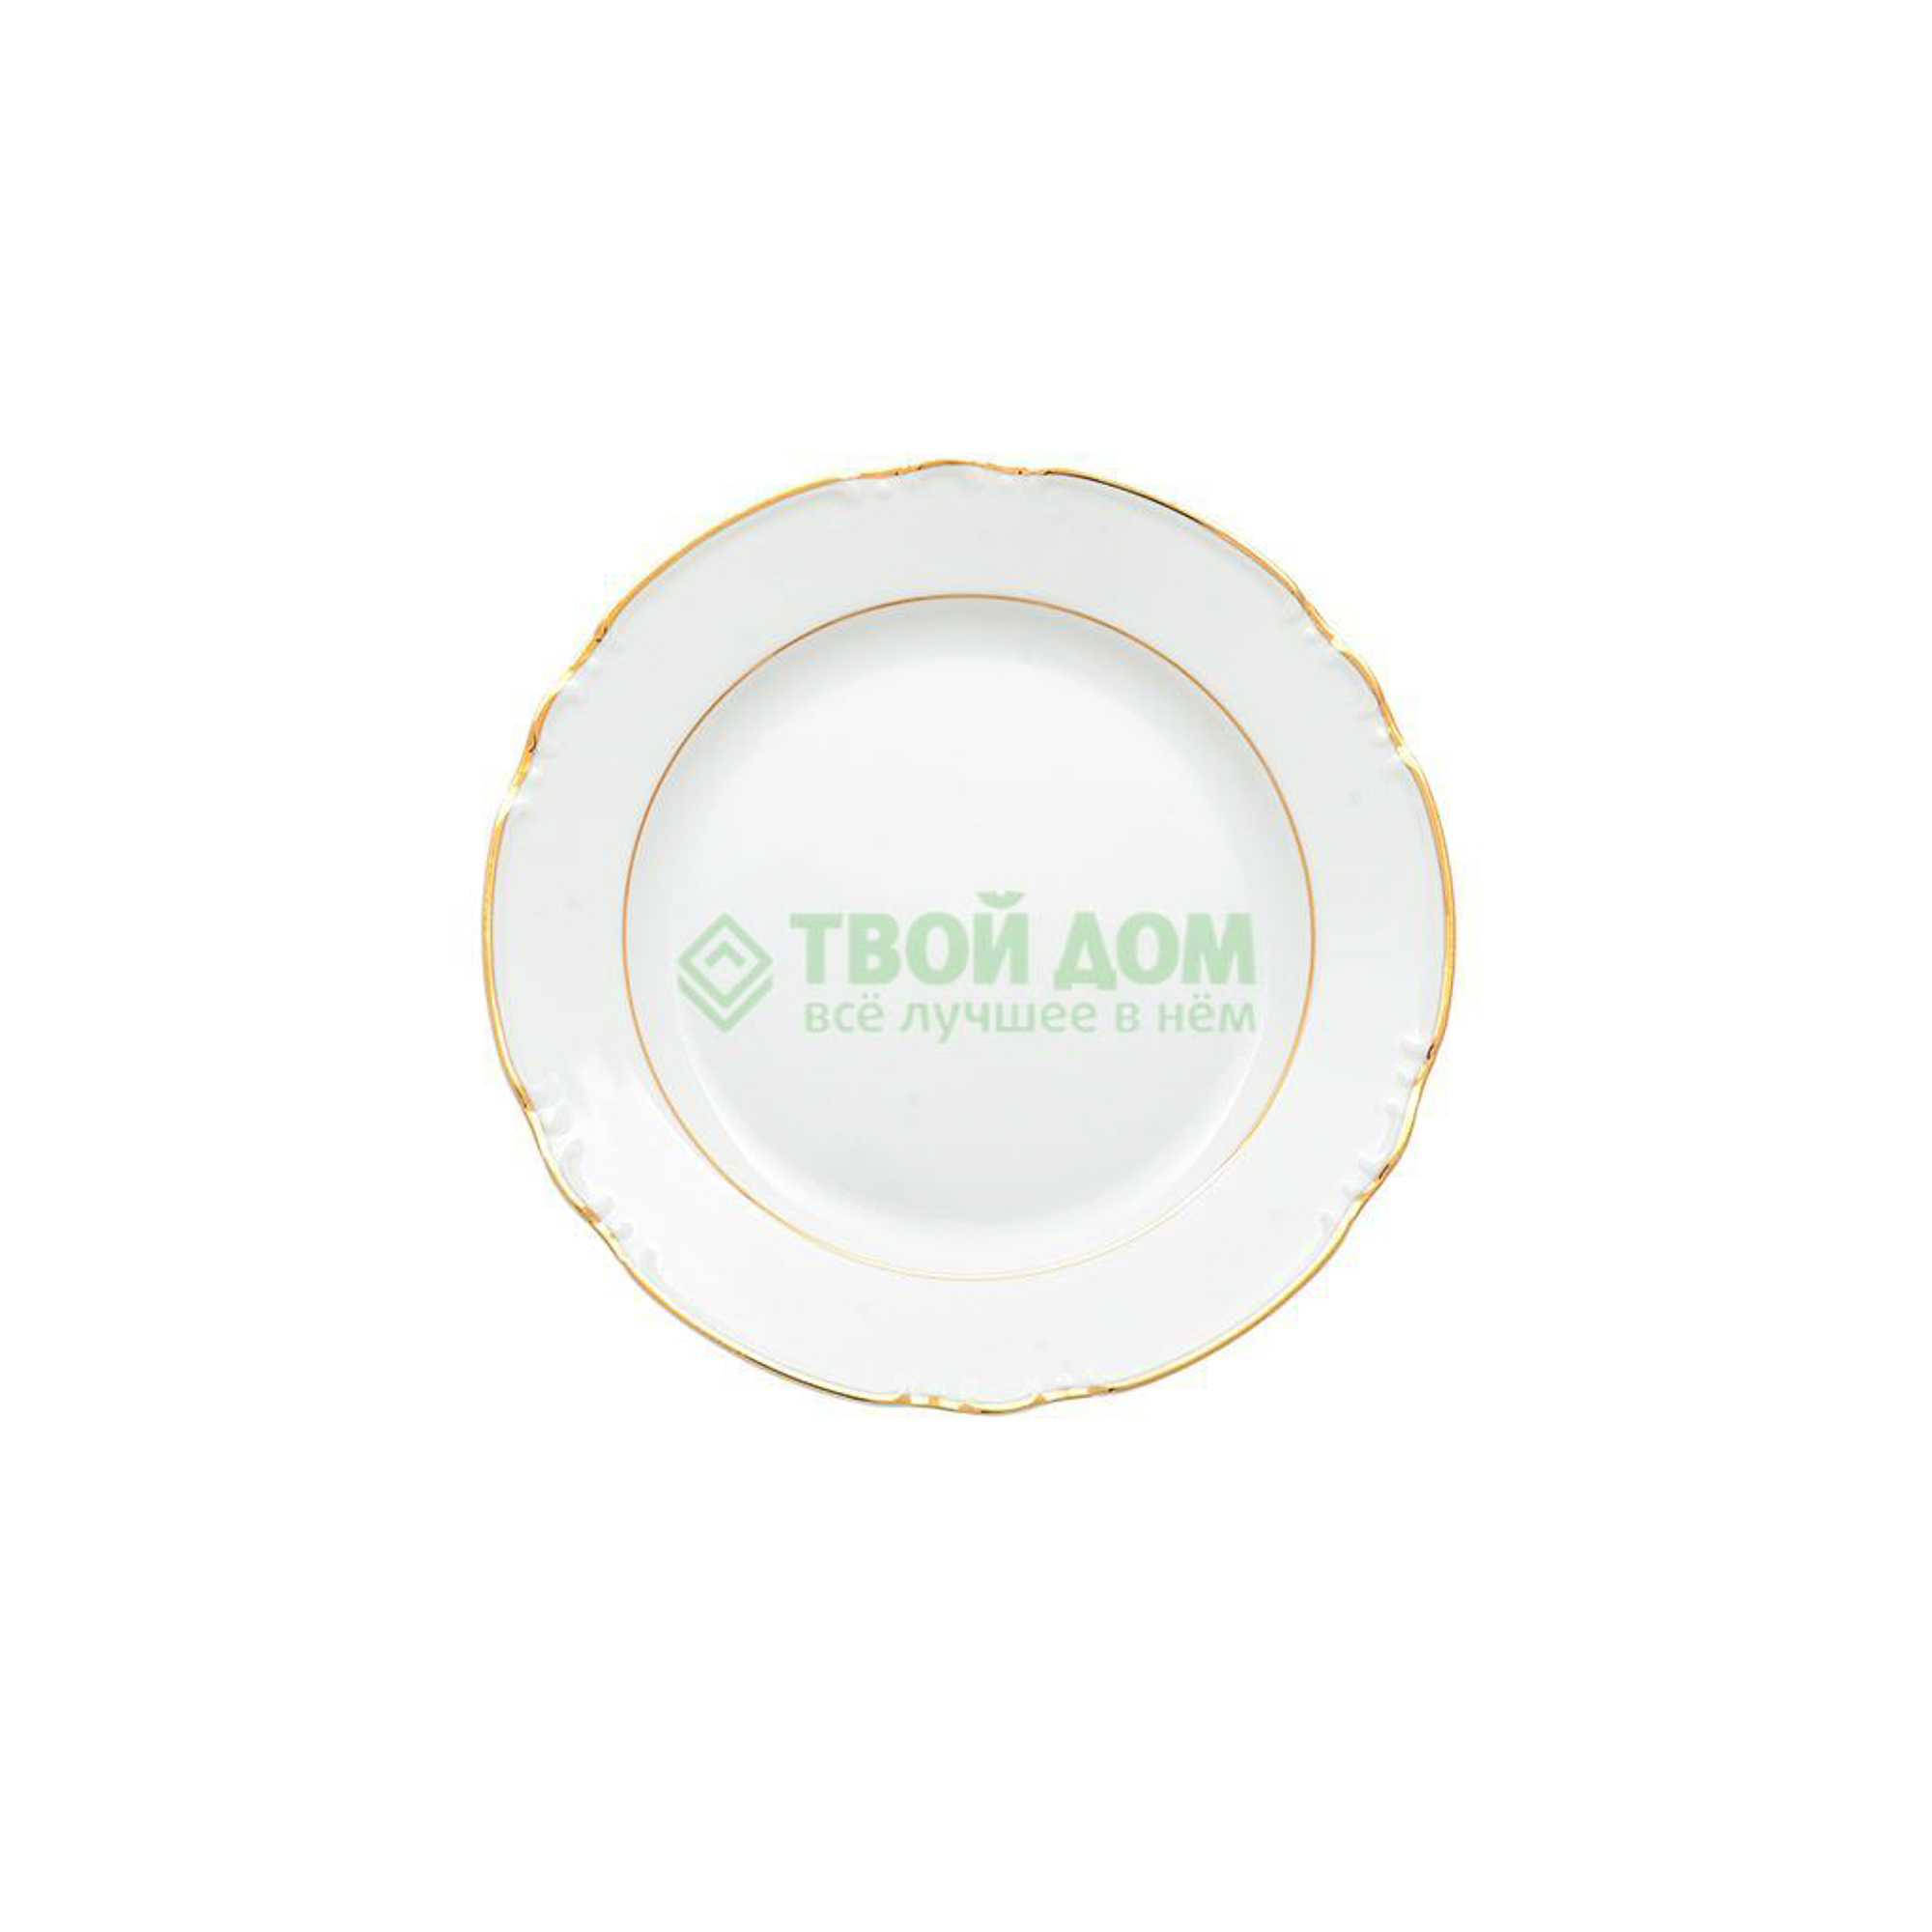 Тарелка Thun Констанция отводка золото 24 см тарелка десертная thun констанция 19 см декор